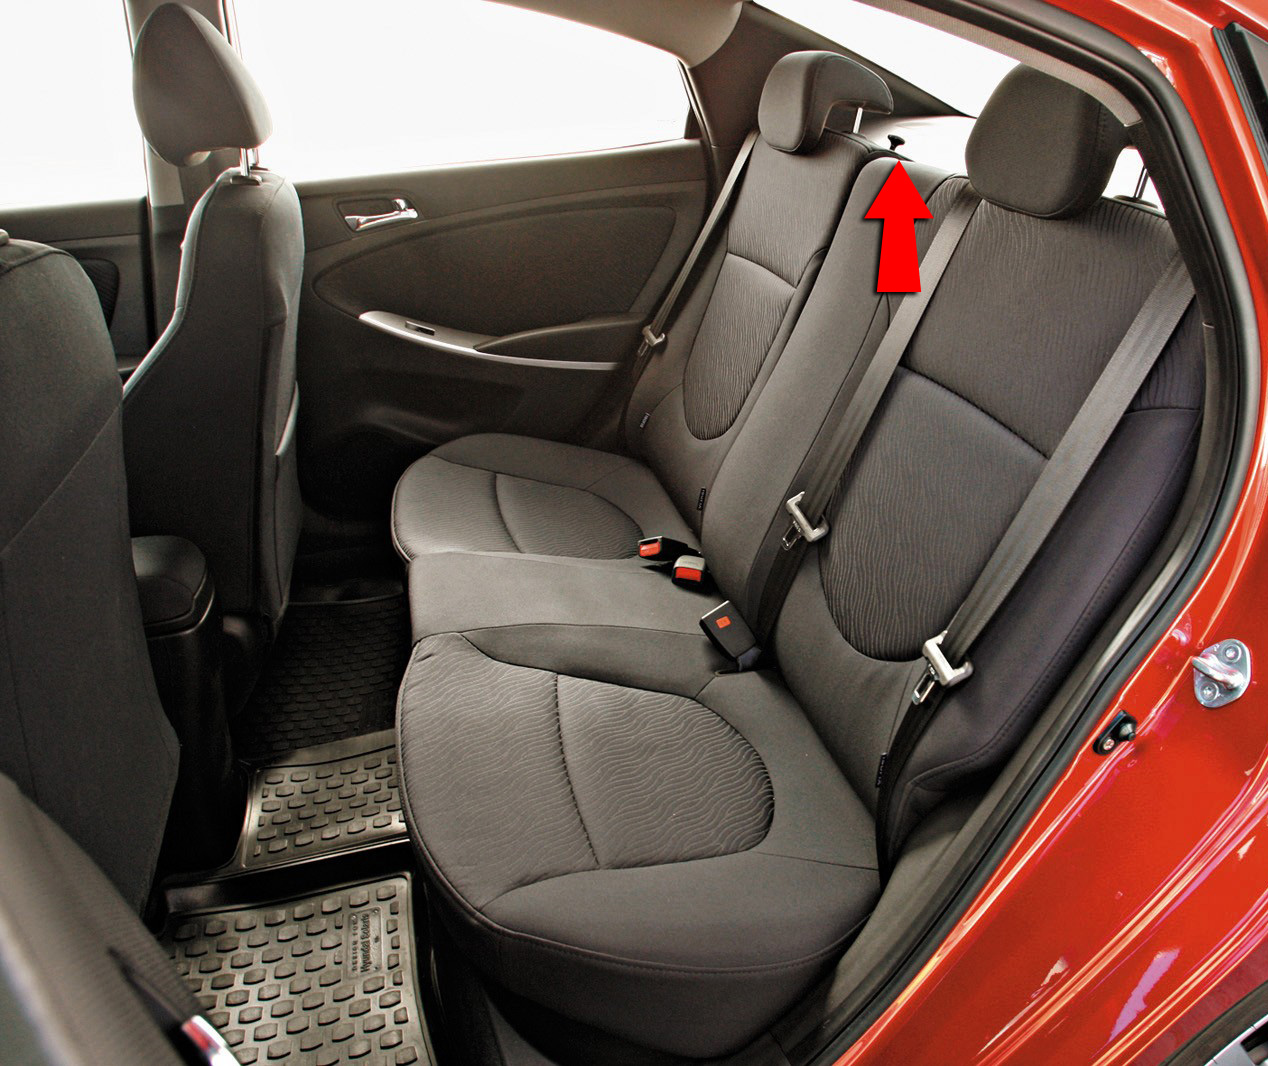 Расположение фиксатора спинки заднего сиденья на автомобиле Hyundai Solaris 2010-2016